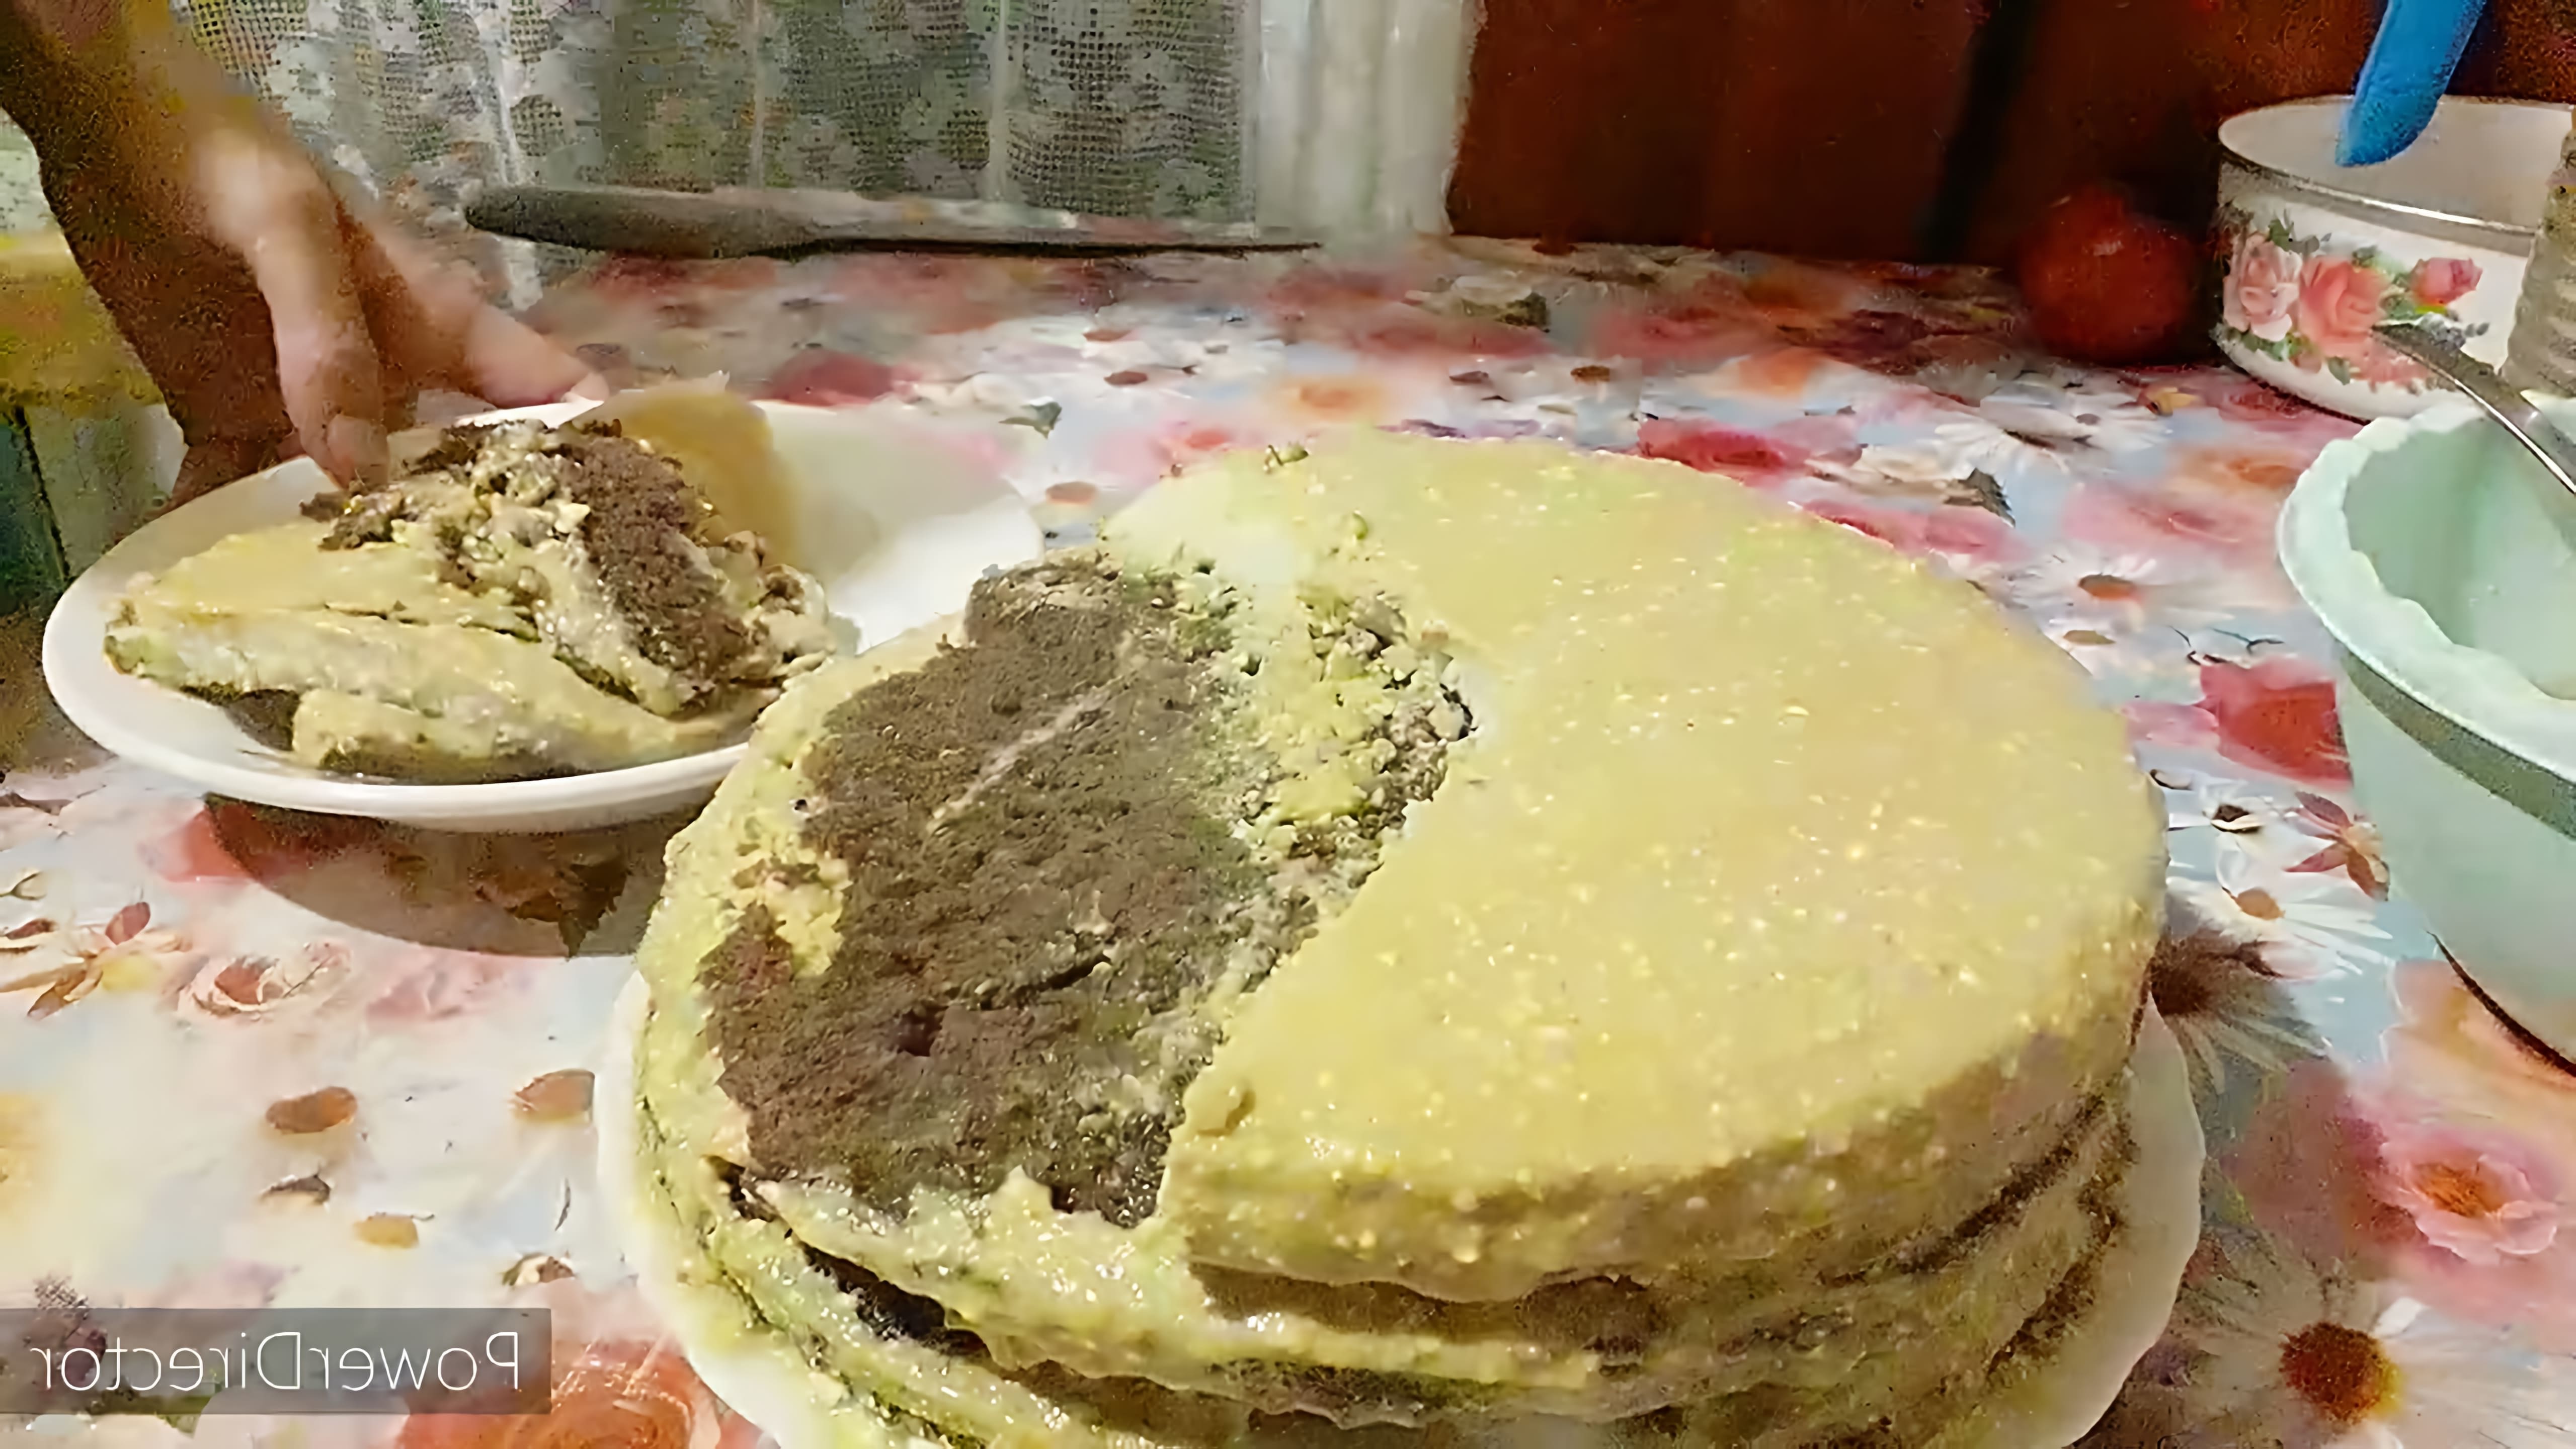 В этом видео демонстрируется процесс приготовления ванильно-шоколадного торта с соленым арахисом и заливкой из сока